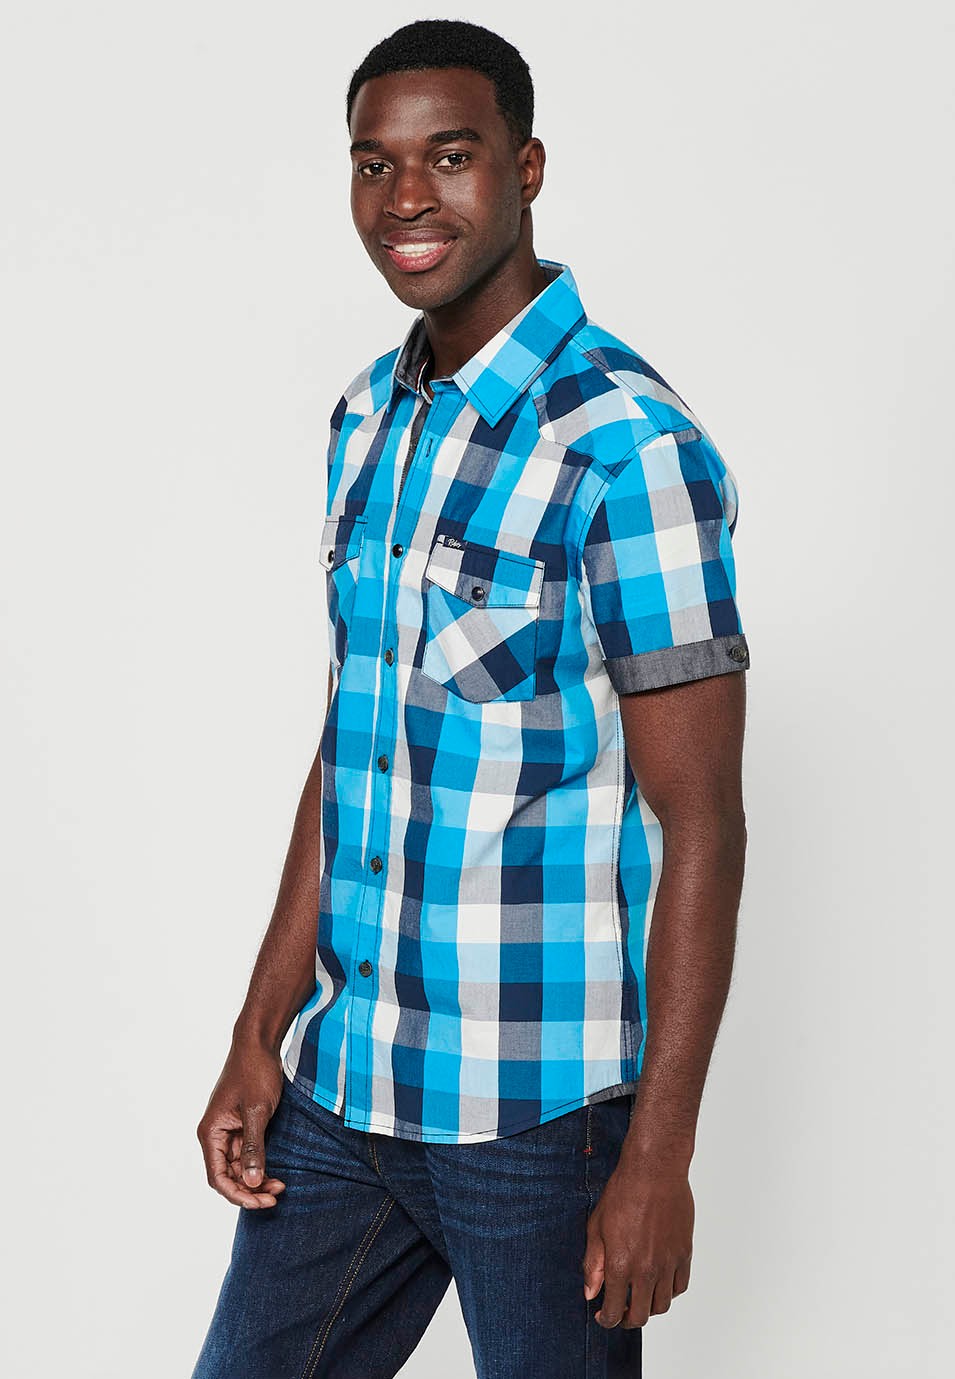 Camisa manga corta de algodón de cuadros, color azul y blanco para hombres 1